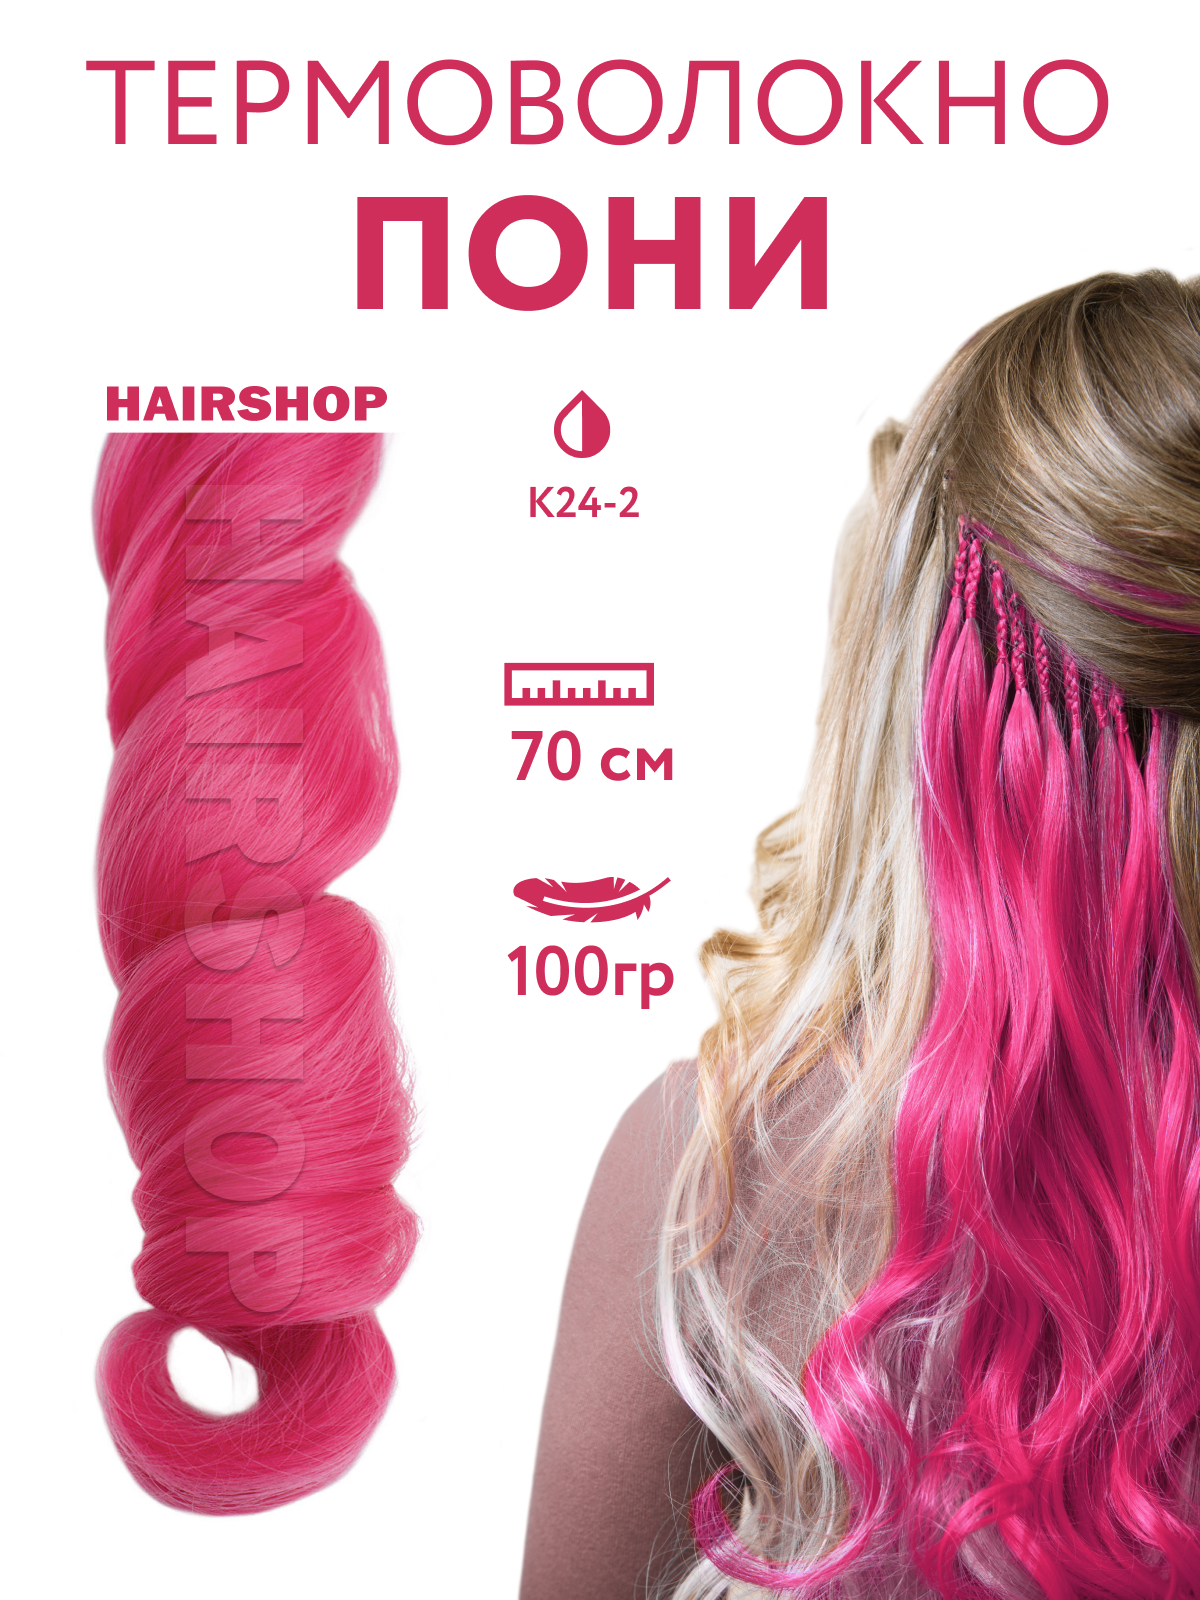 Канекалон HAIRSHOP Пони HairUp для точечного афронаращивания К24-2 Темно-розовый 1,4м пряжа fable fur 100% микрополиэстер 100м 100гр 973 розовый